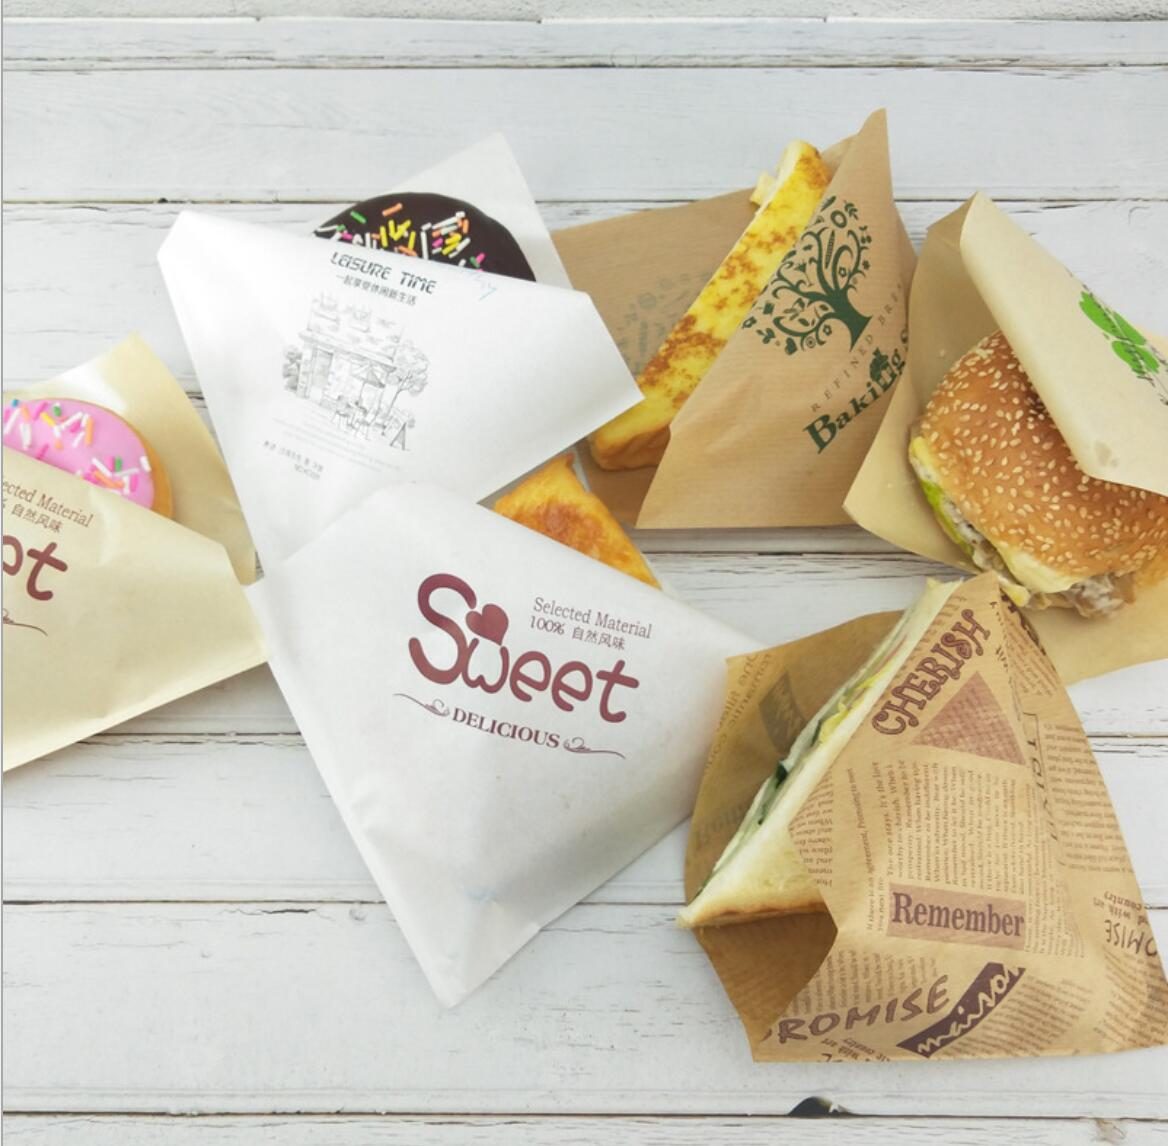 Paper Lunch Bag Wax Sandwich Size Quart